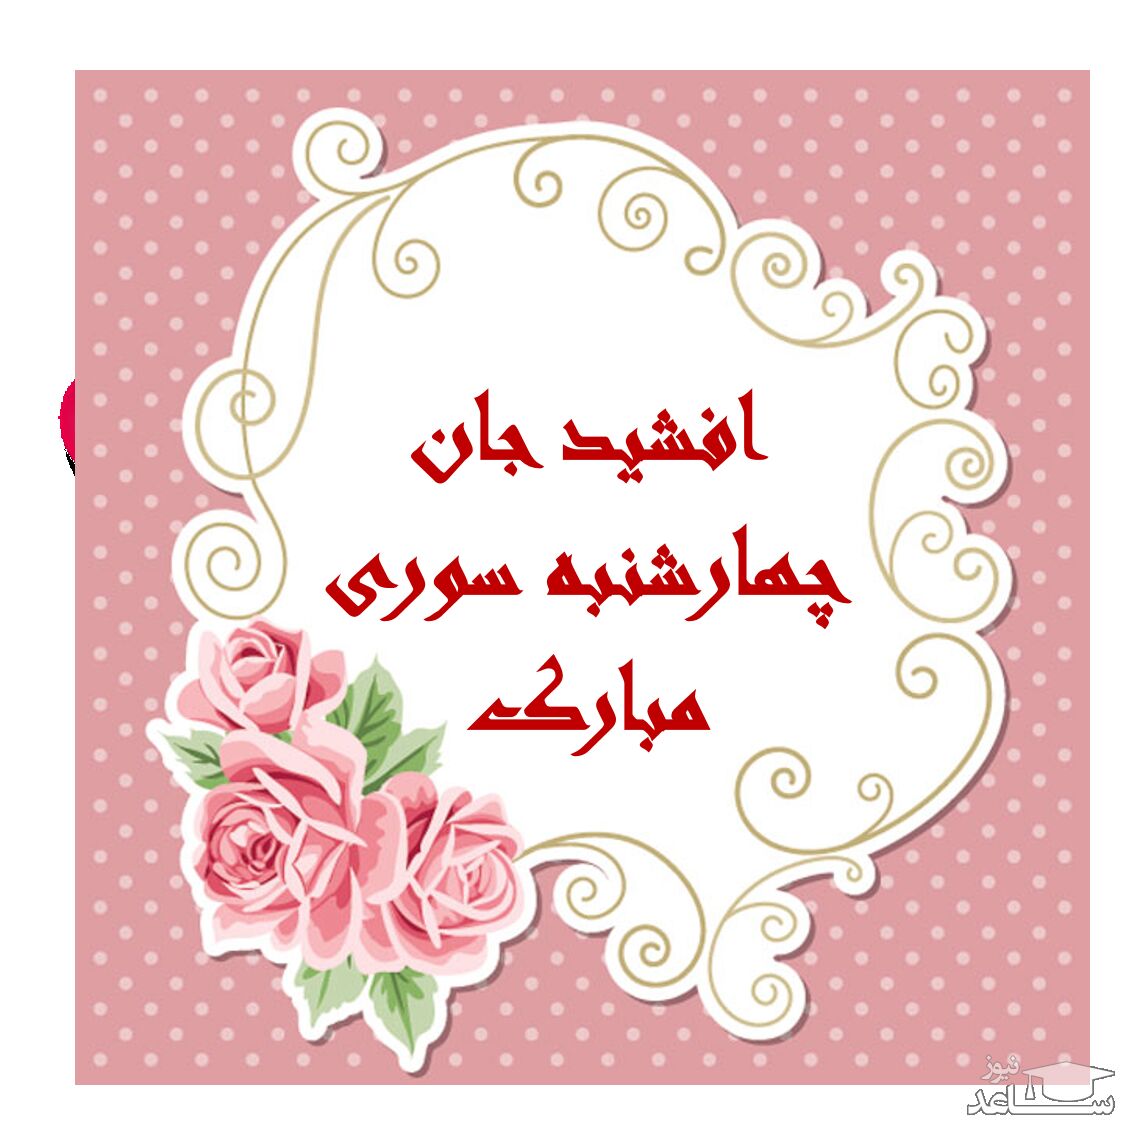 پوستر تبریک چهارشنبه سوری برای افشید